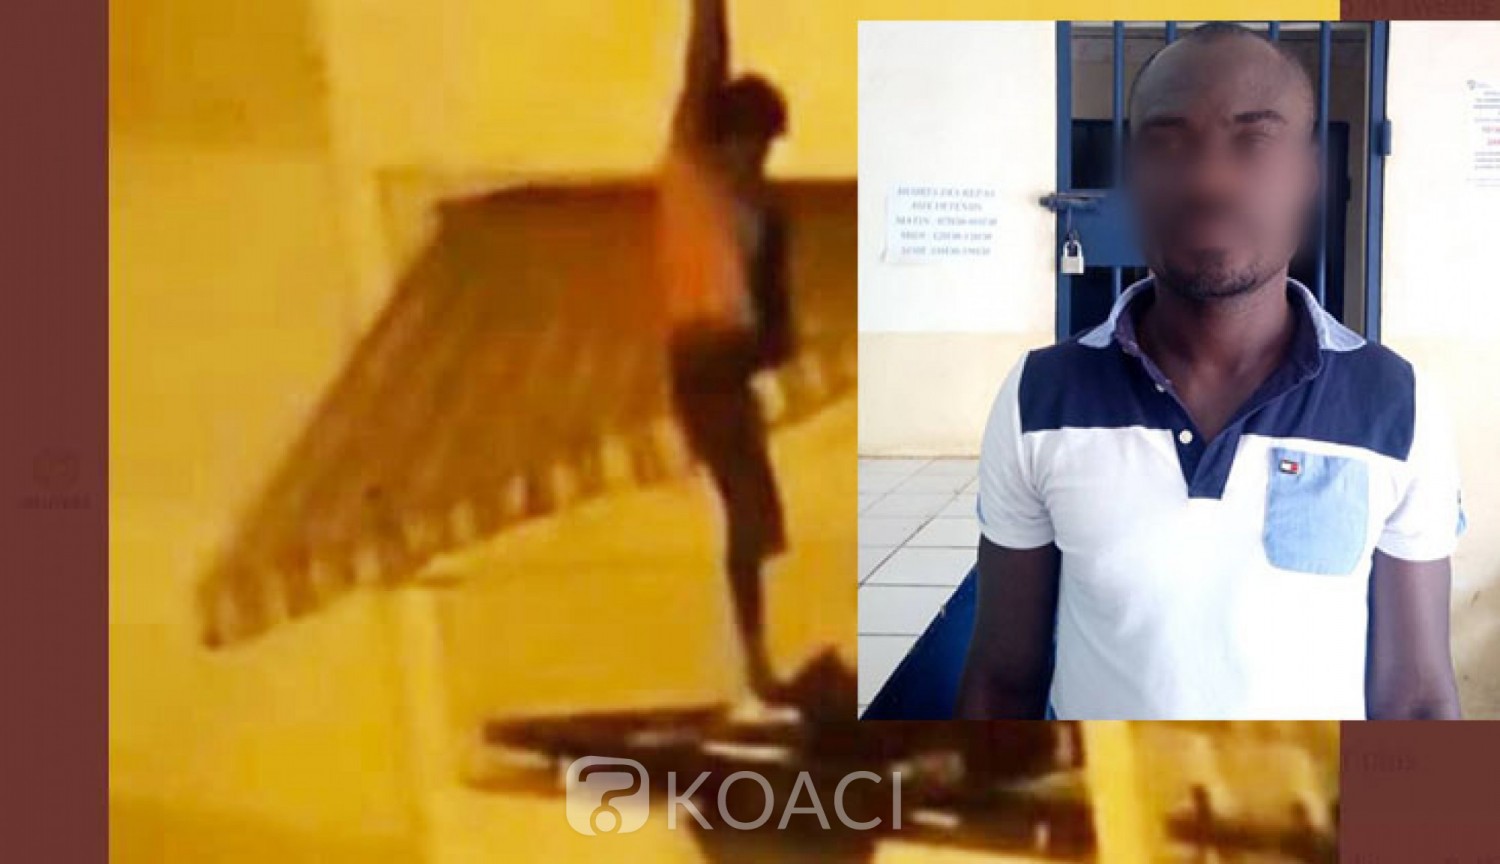 Côte d'Ivoire : Affaire chute depuis un balcon d'immeuble à Yopougon, pas de plainte et compagnon dédouané de violence